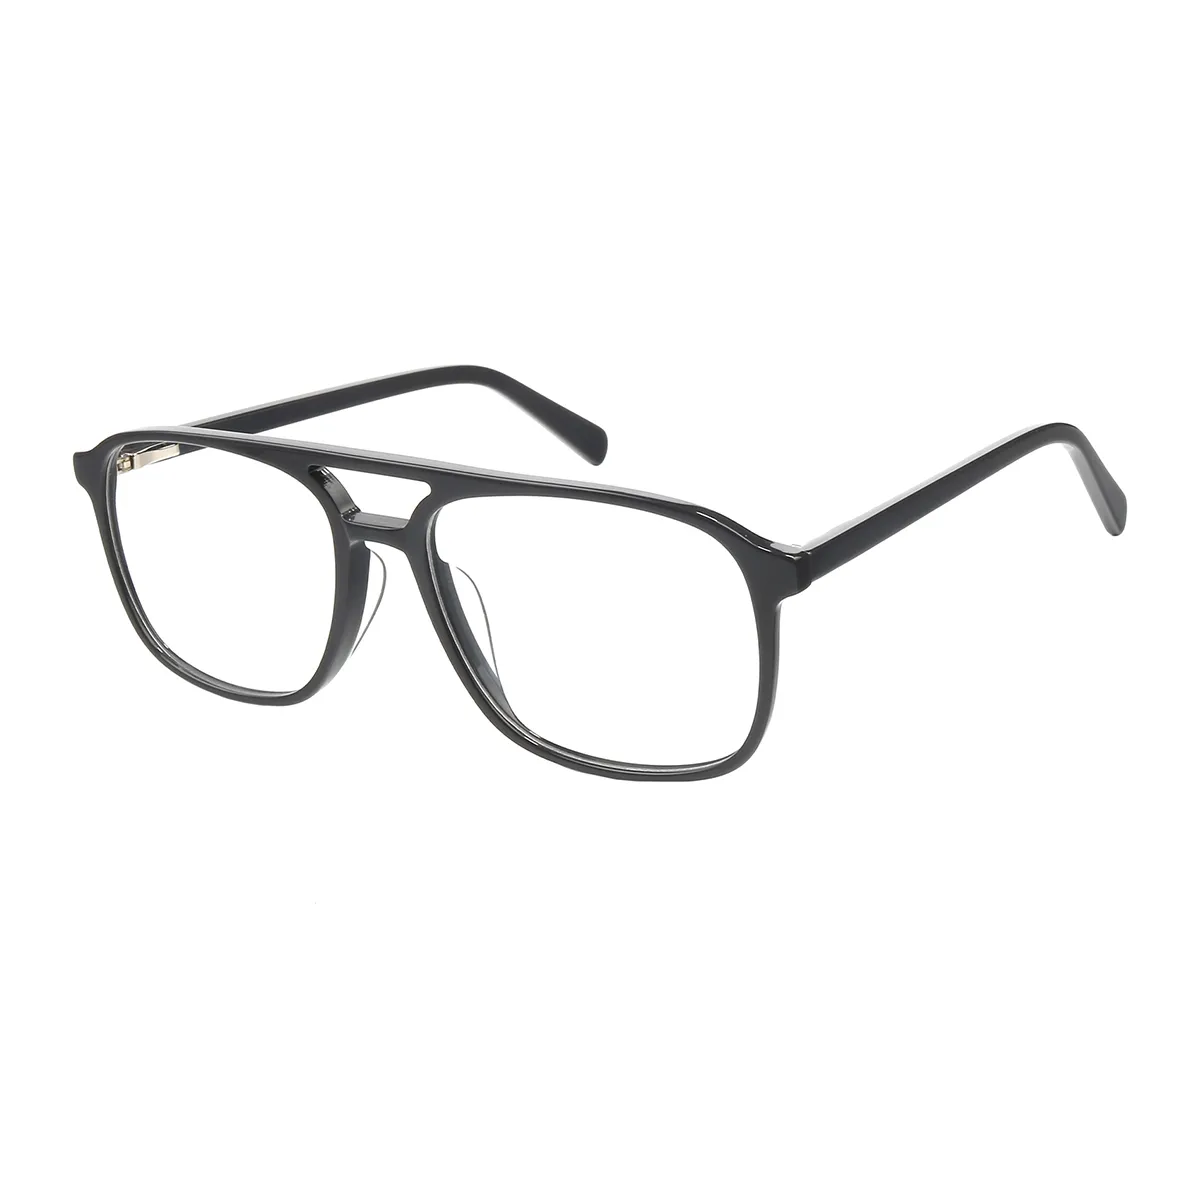 Fashion Aviator Tortoiseshell Glasses for Men